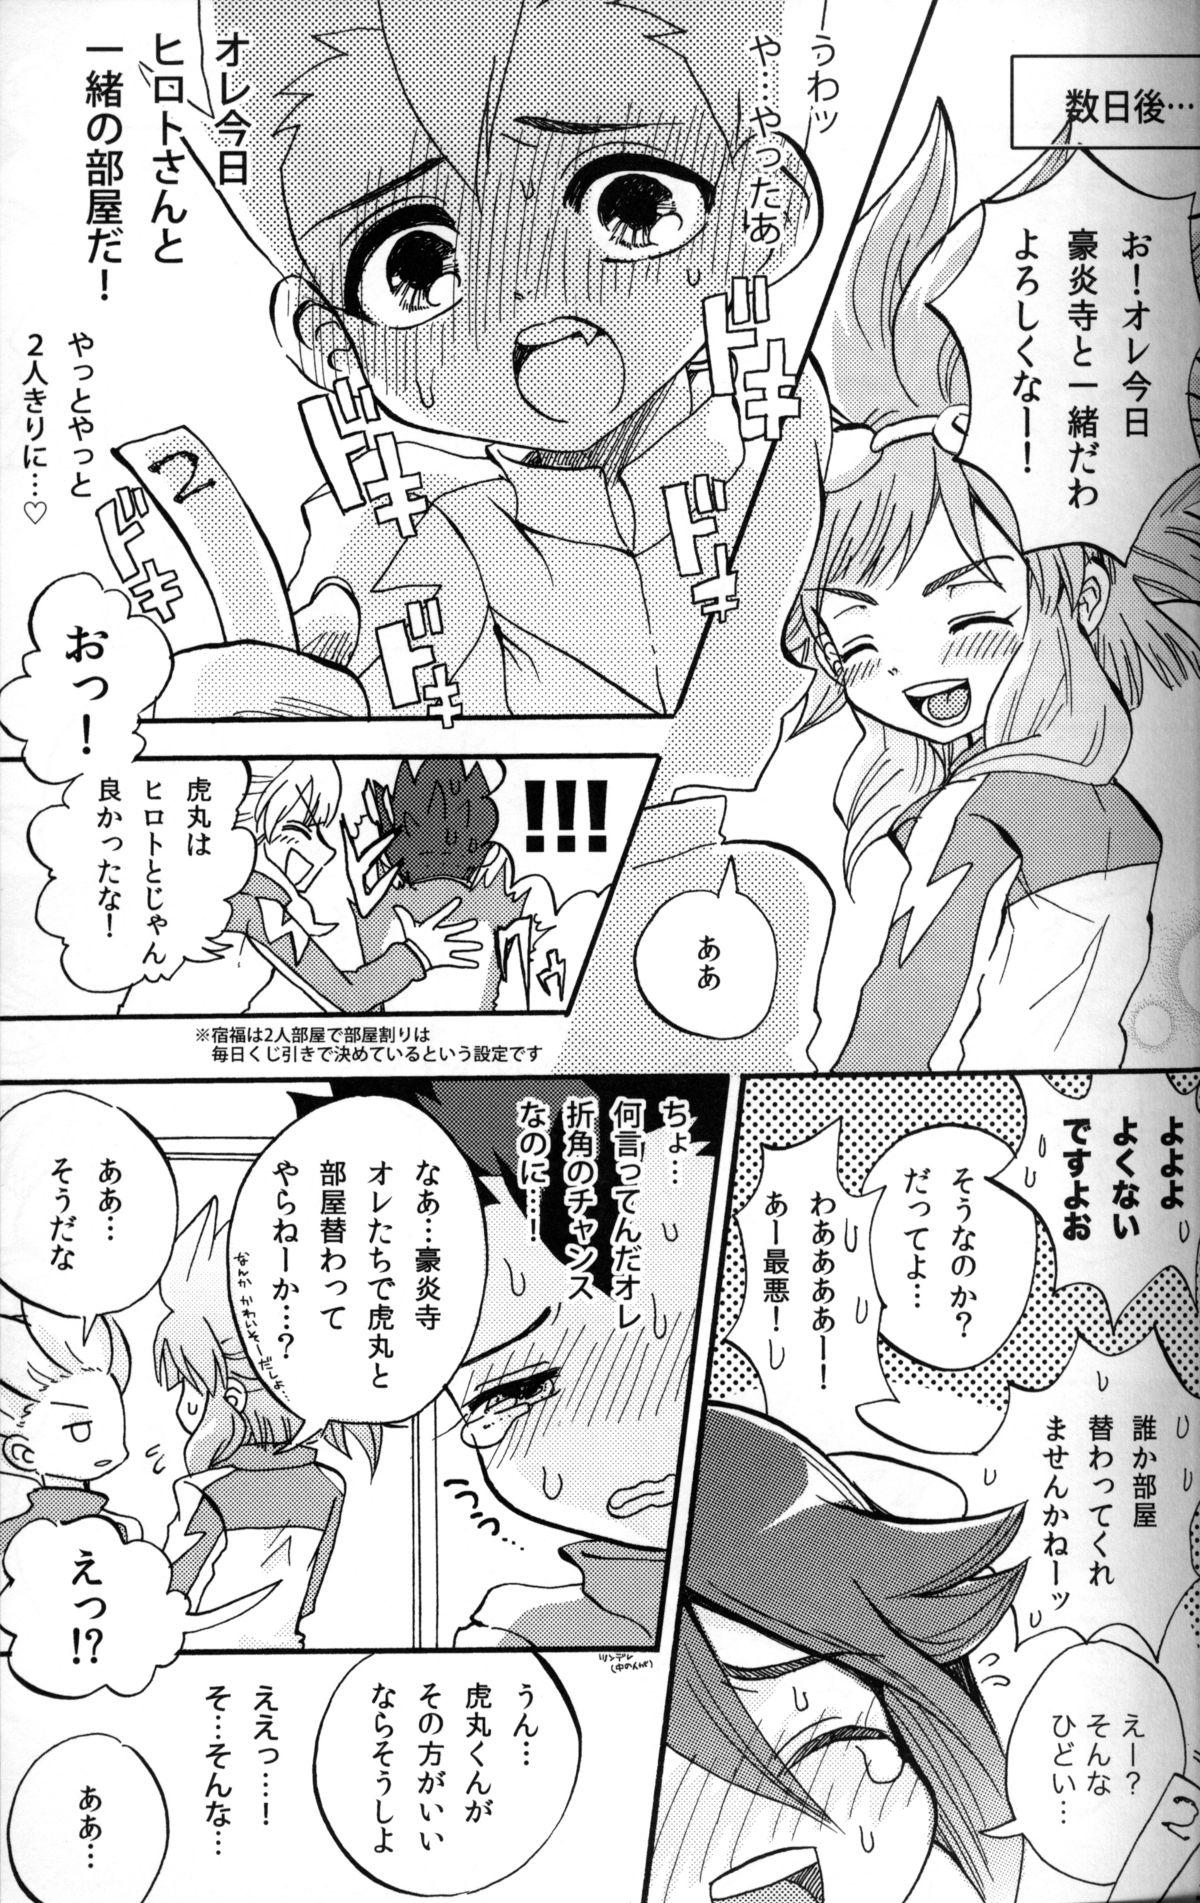 Twerk G3! - Inazuma eleven Hotwife - Page 3